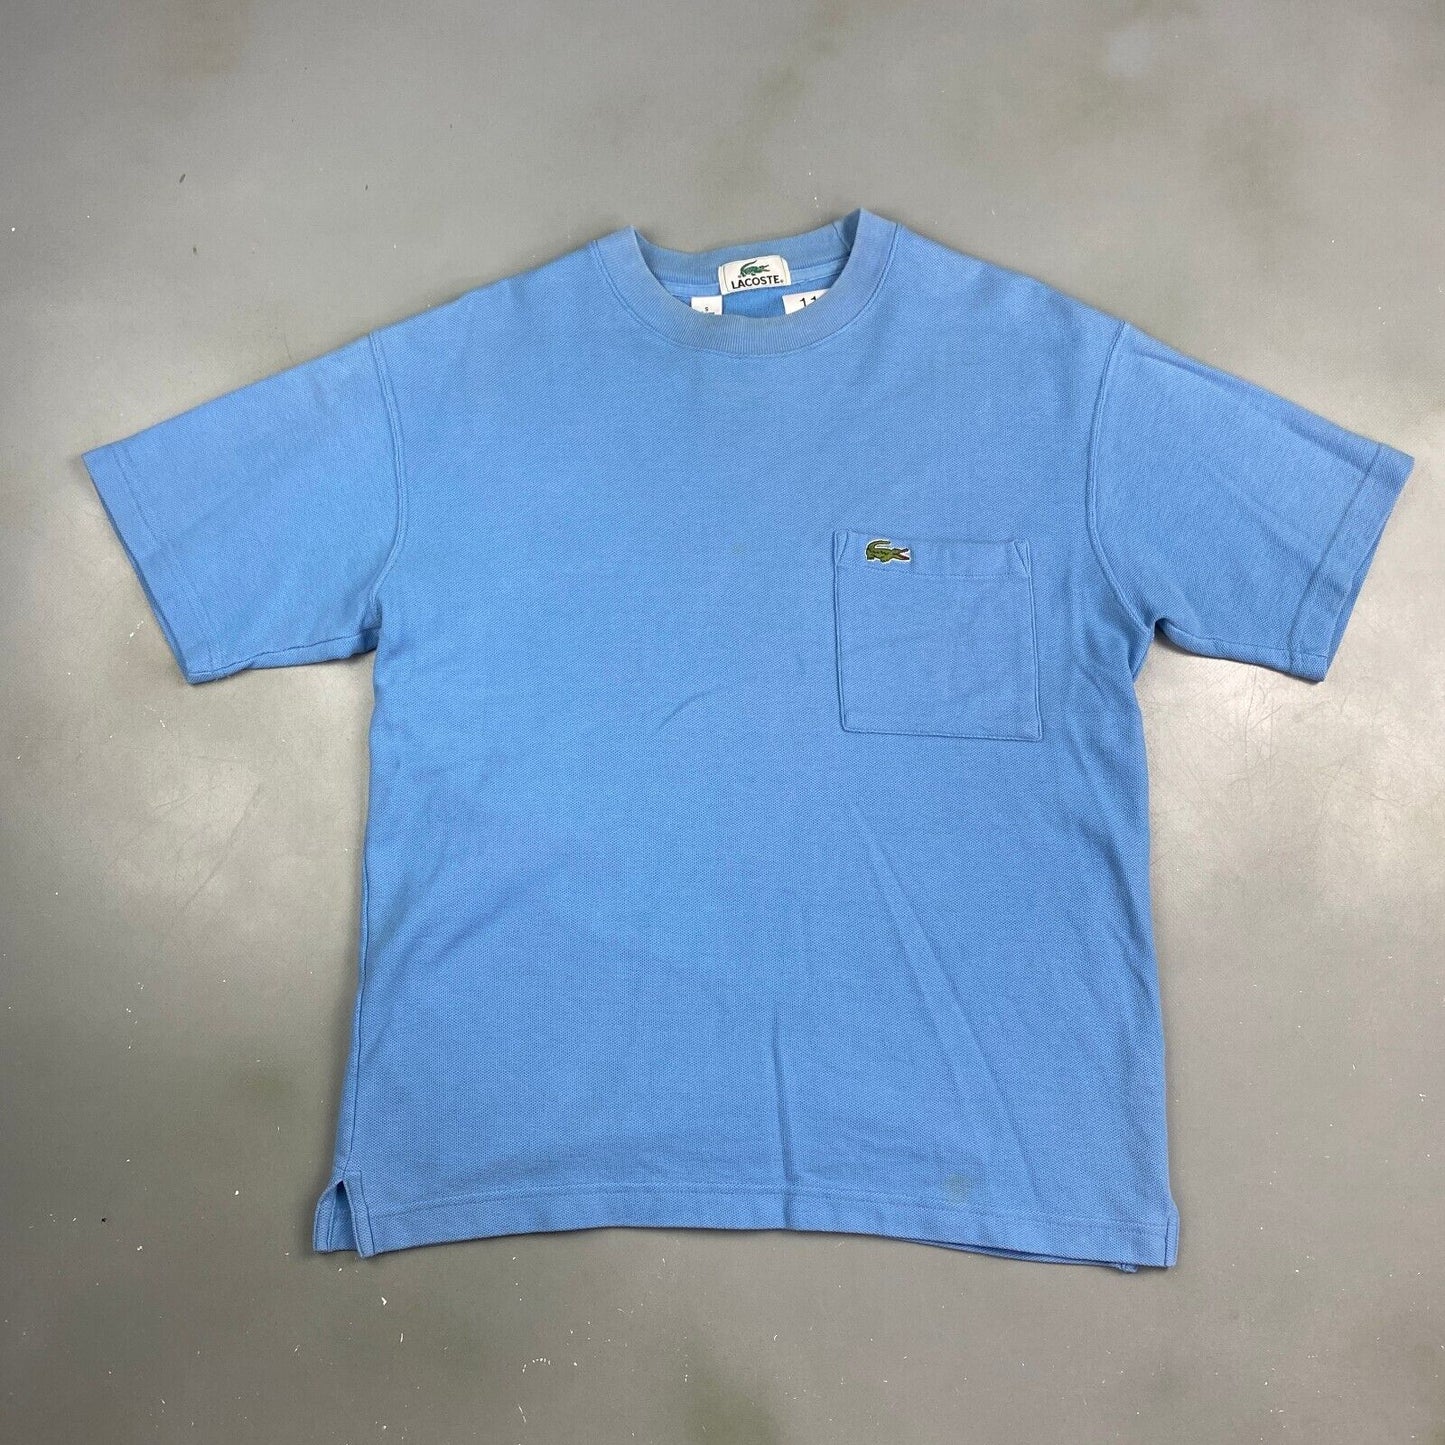 VINTAGE Lacoste Sm Alligator Blue Pocket T-Shirt sz Small Men Adult